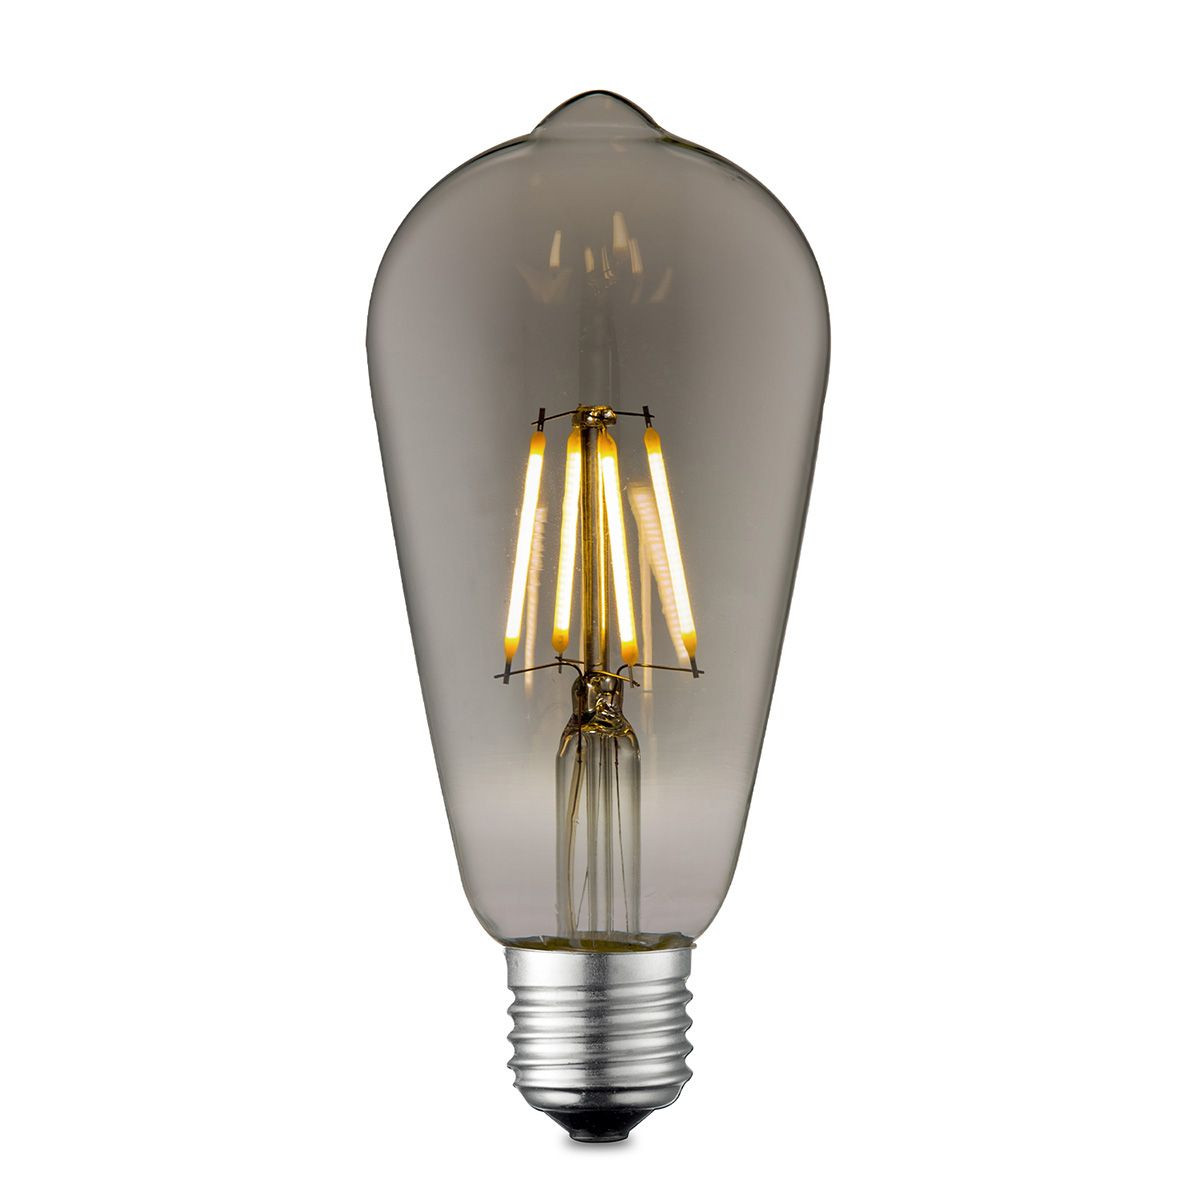 Edison Vintage LED lamp E27 LED filament lichtbron, Deco Drop ST64, 6.4/6.4/14cm, Rook, Retro LED lamp Dimbaar, 4W 150lm 1800K, warm wit licht, geschikt voor E27 fitting